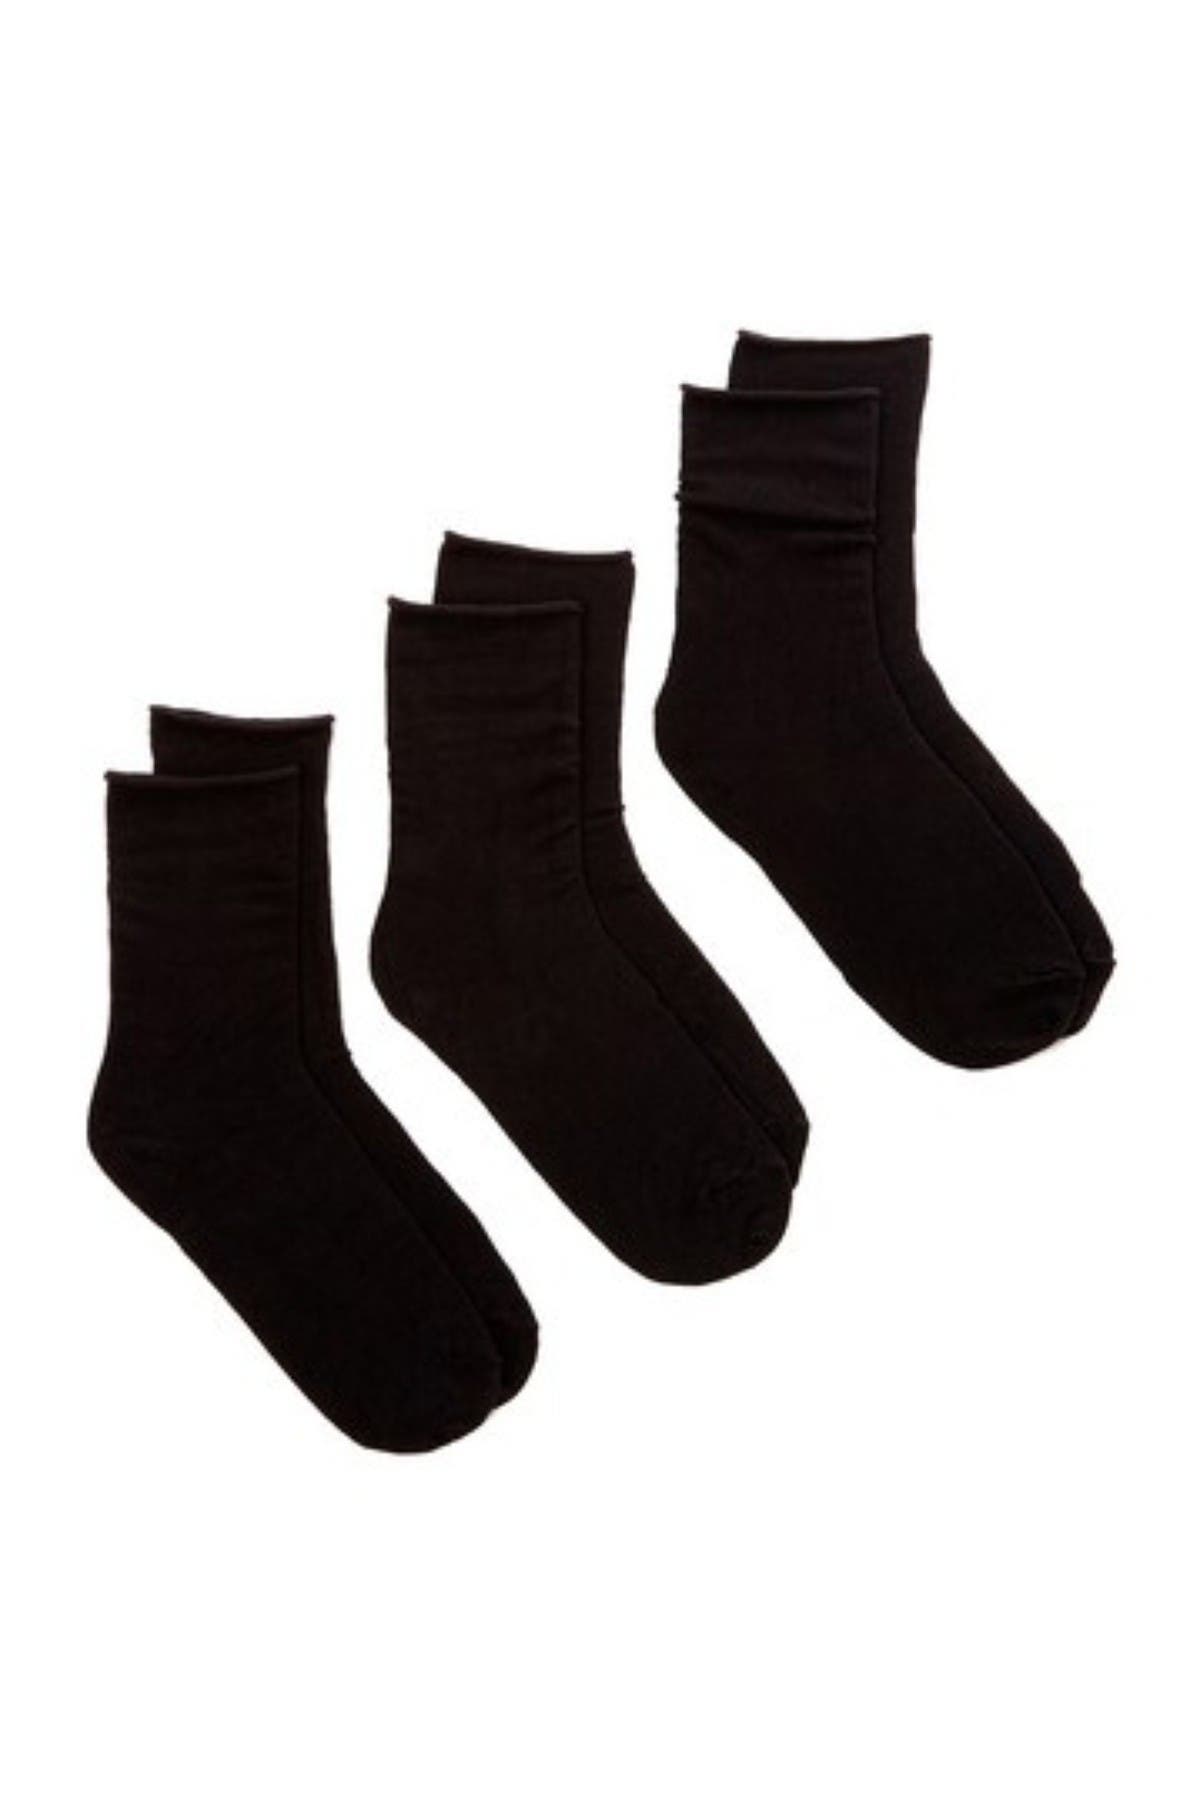 HUE | Roll Top Socks - Pack of 3 | Nordstrom Rack